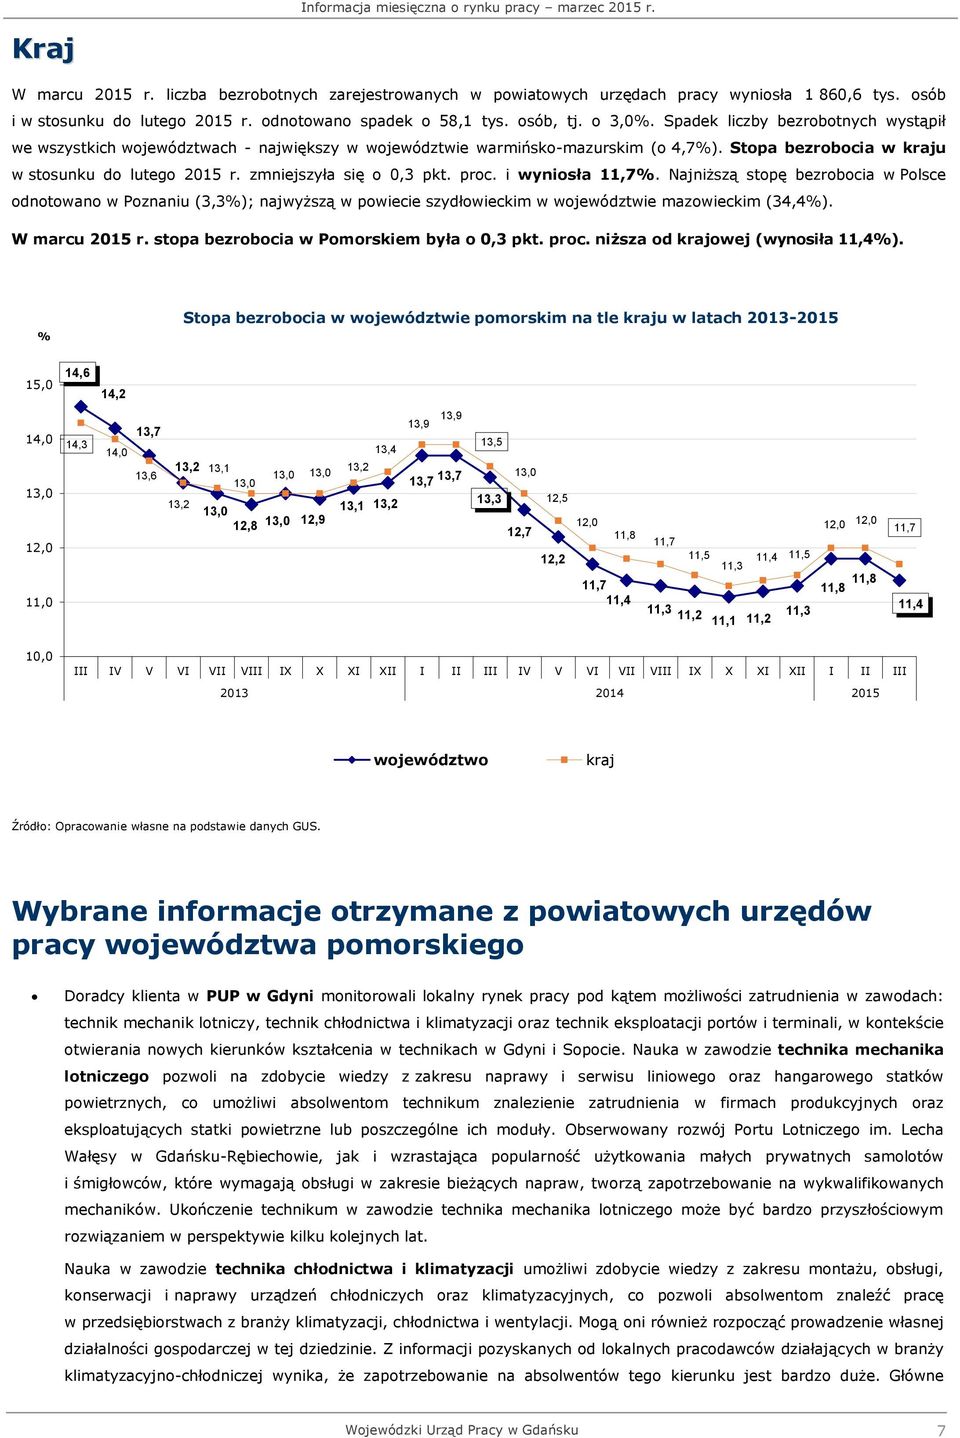 zmniejszyła się o 0,3 pkt. proc. i wyniosła 11,7%. Najniższą stopę bezrobocia w Polsce odnotowano w Poznaniu (3,3%); najwyższą w powiecie szydłowieckim w województwie mazowieckim (34,4%).